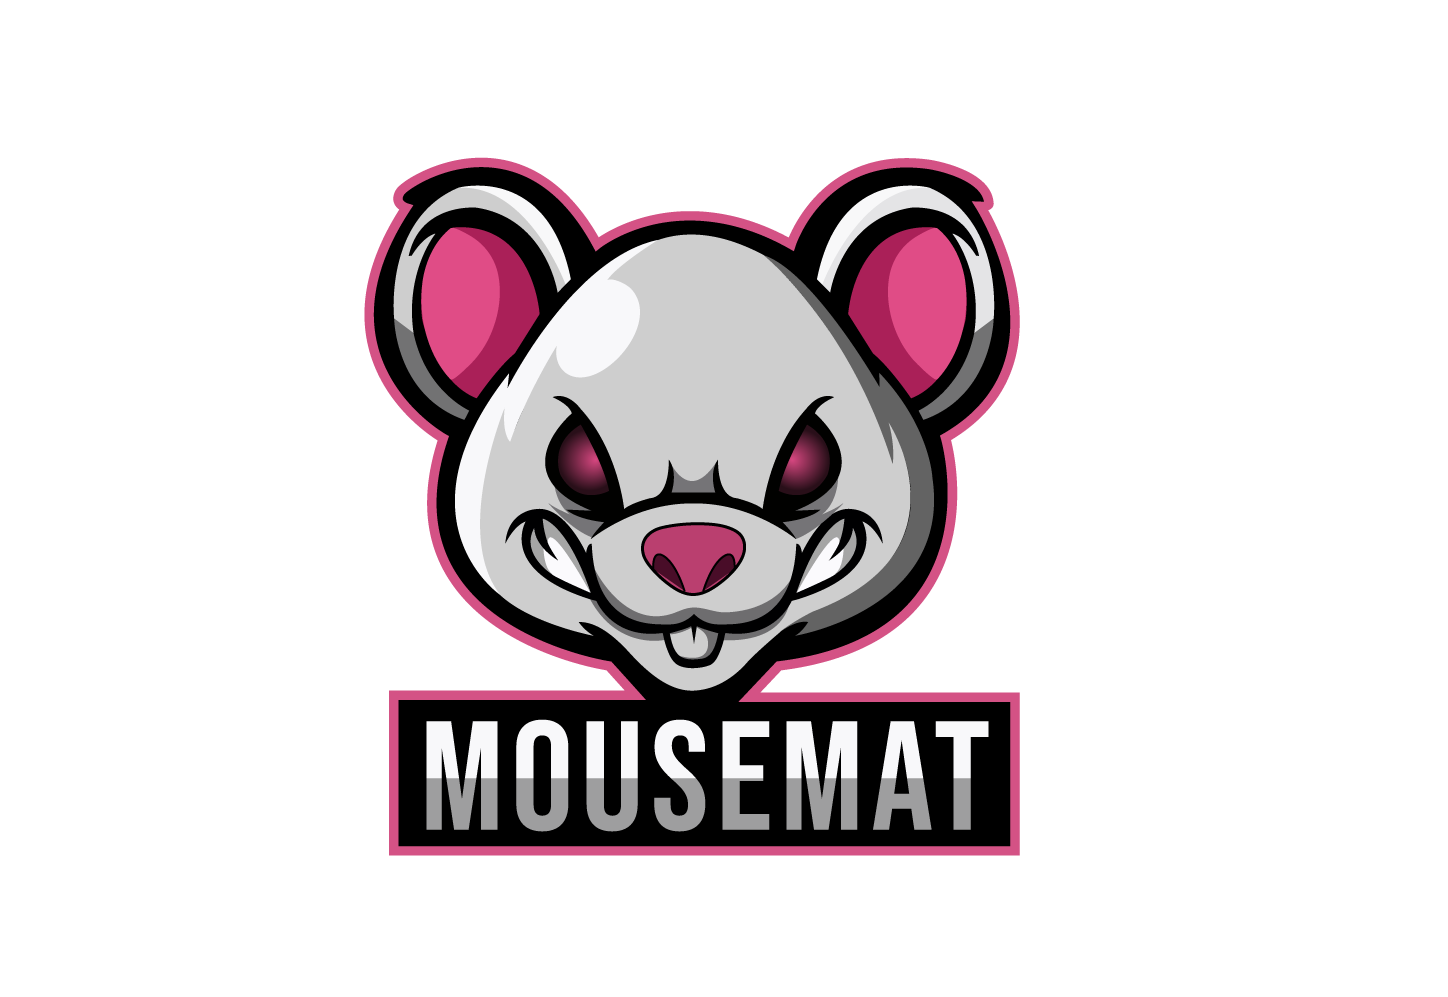 mousemat